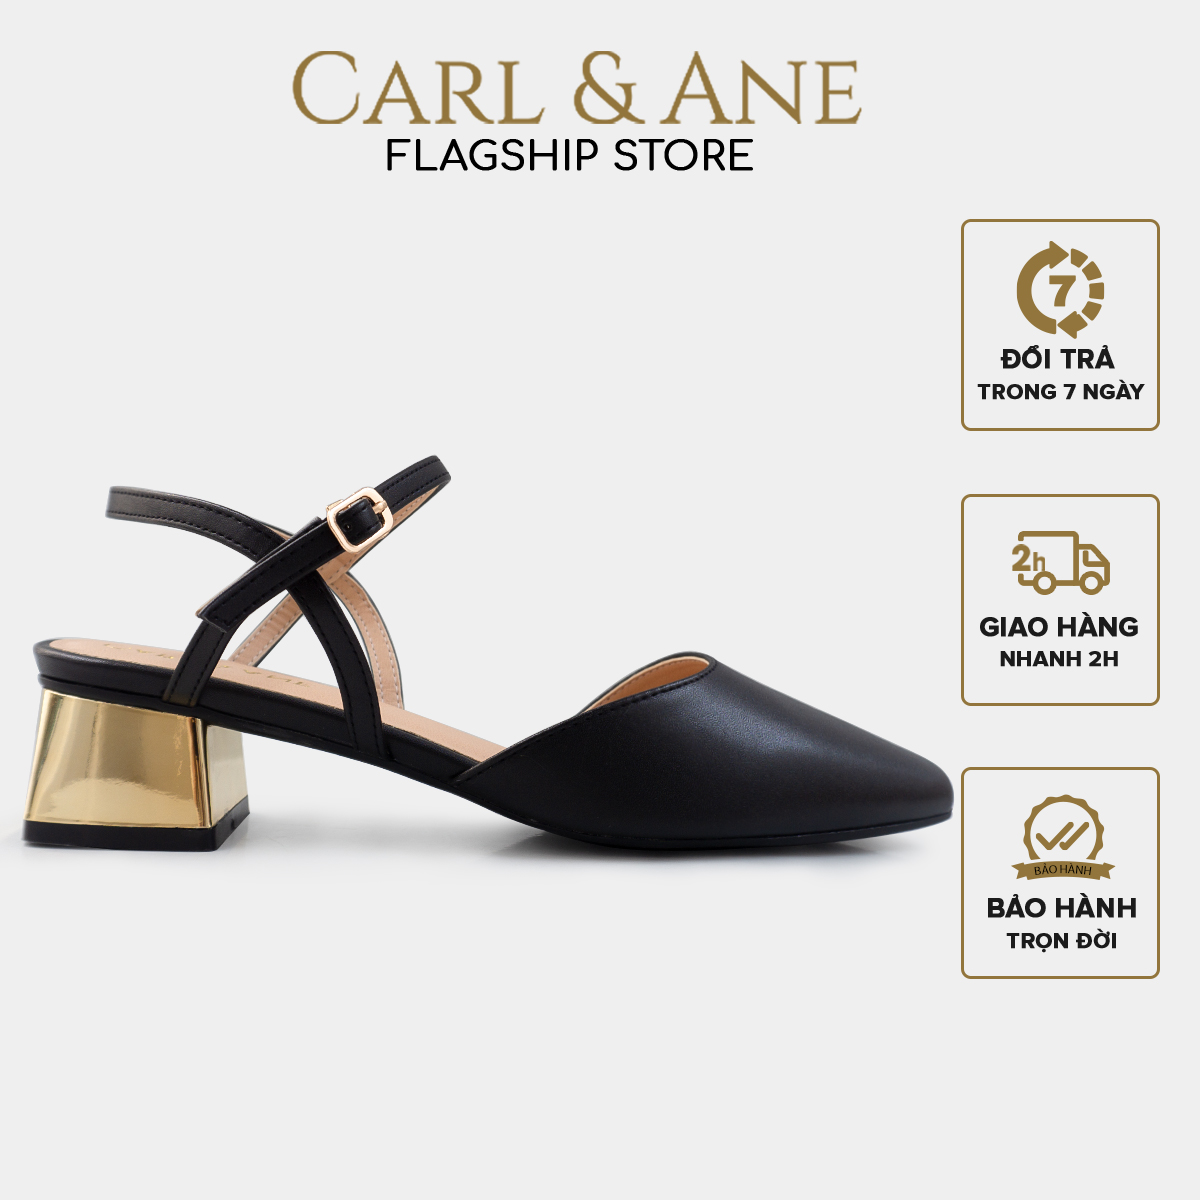 Carl & Ane – Giày cao gót mũi nhọn phối dây quai mảnh thời trang công sở cao 3.5cm màu đen – CL029